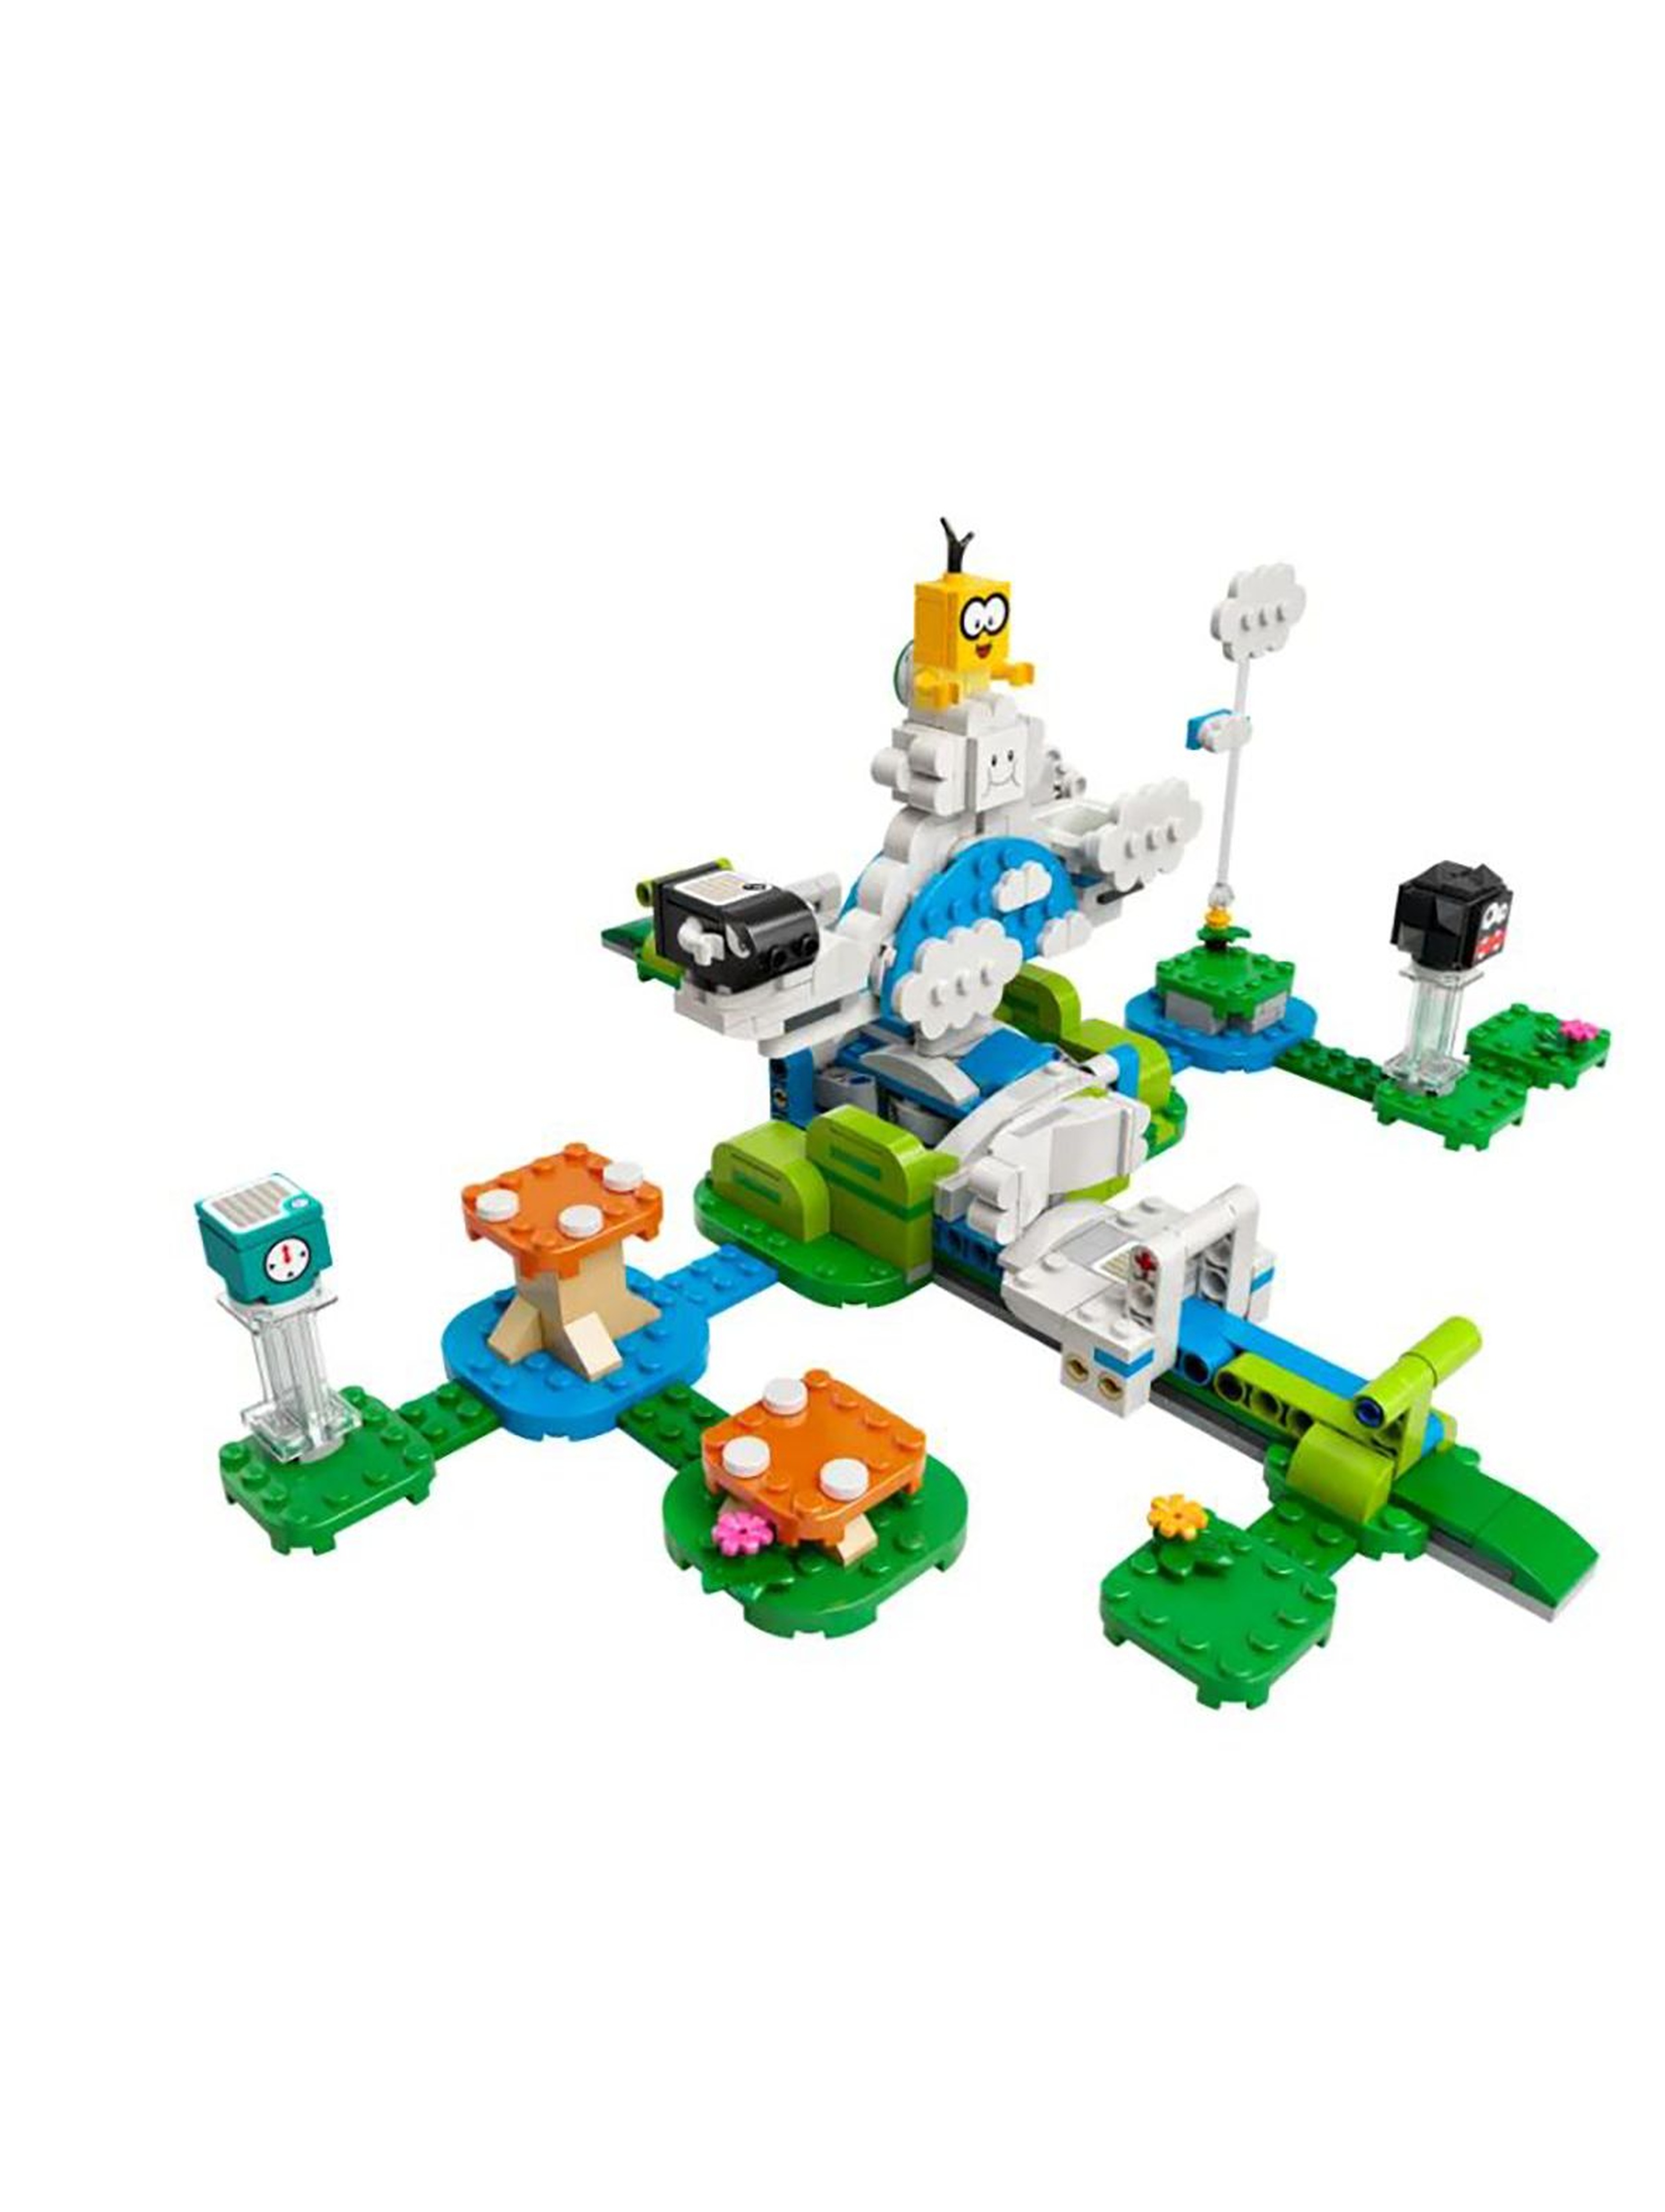 Klocki LEGO® Mario Produkt Podniebny świat Lakitu — zestaw dodatkowy 71389 wiek 7+